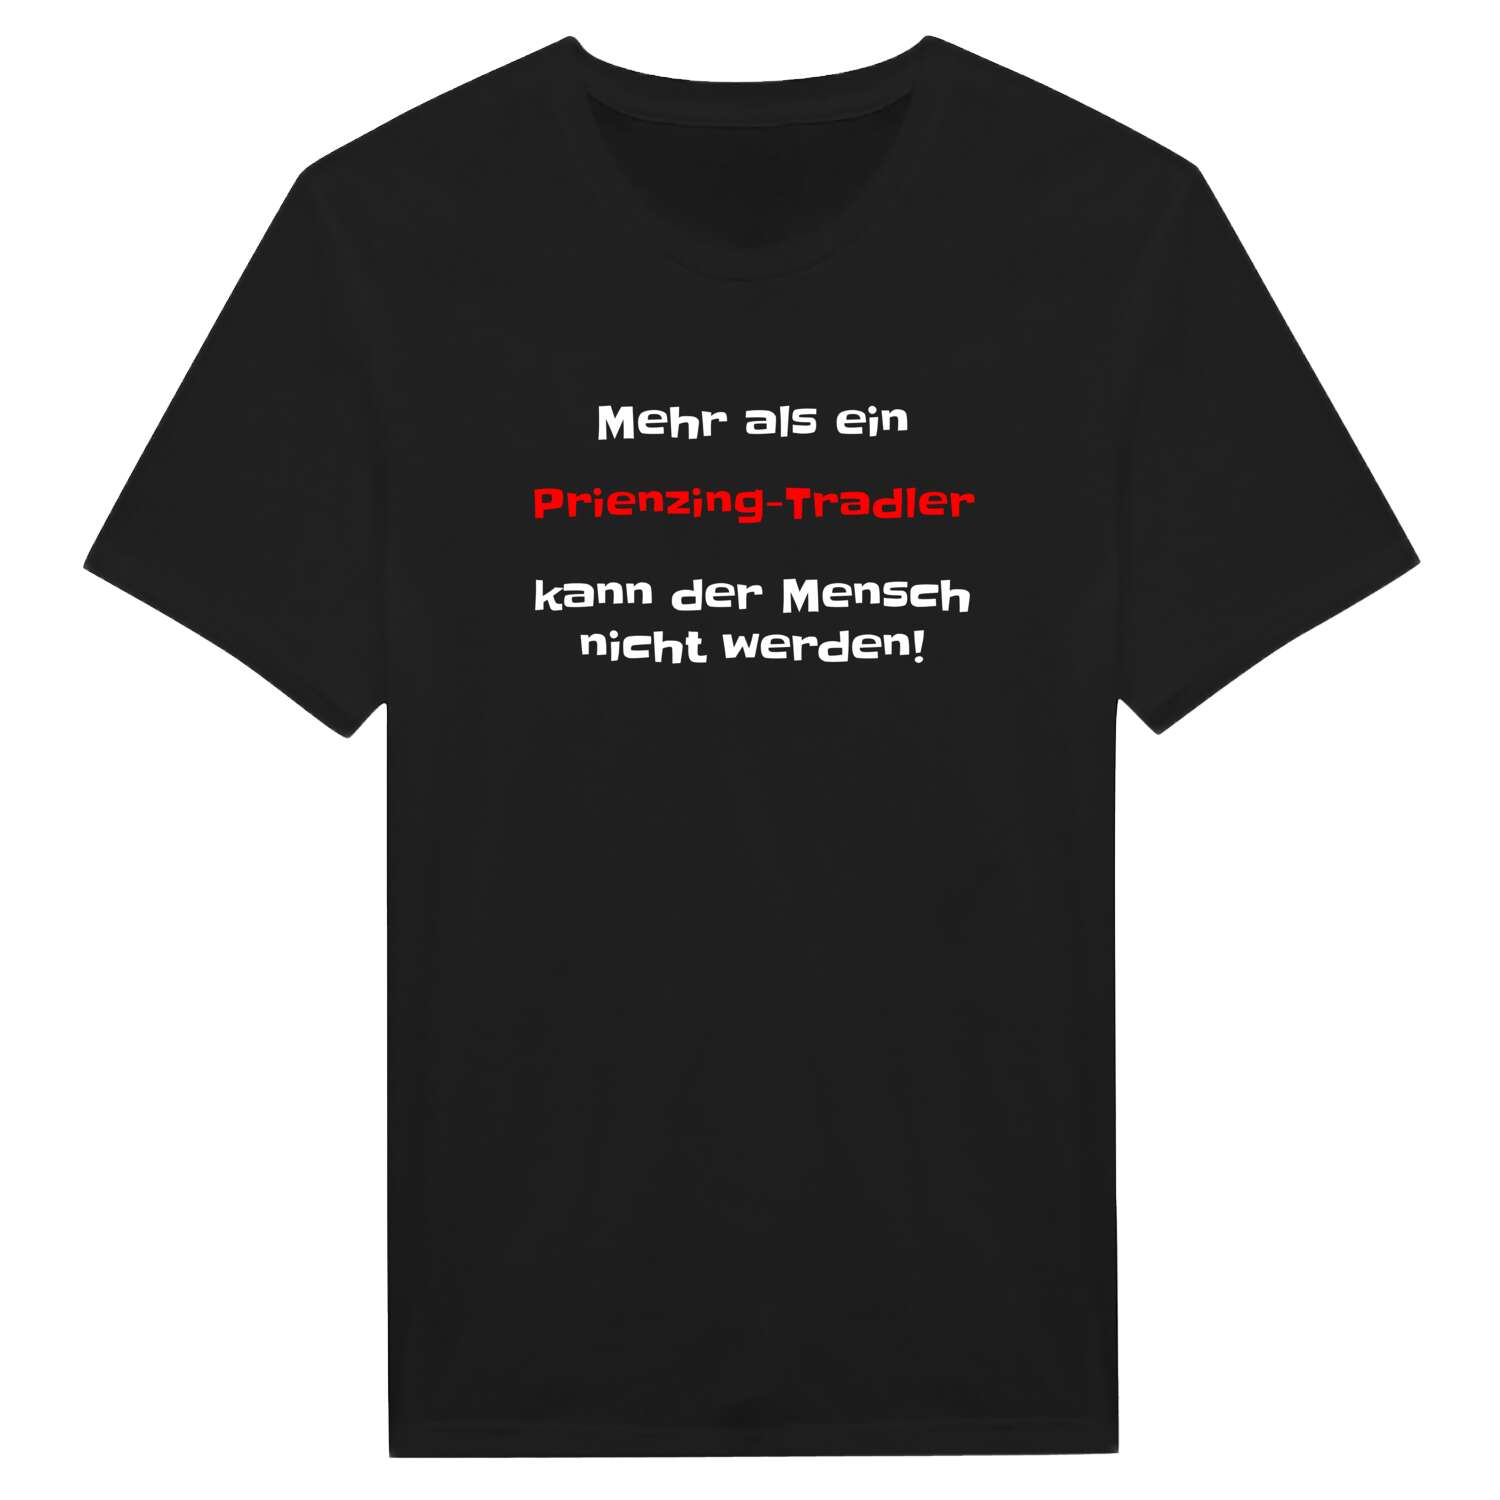 Prienzing-Tradl T-Shirt »Mehr als ein«